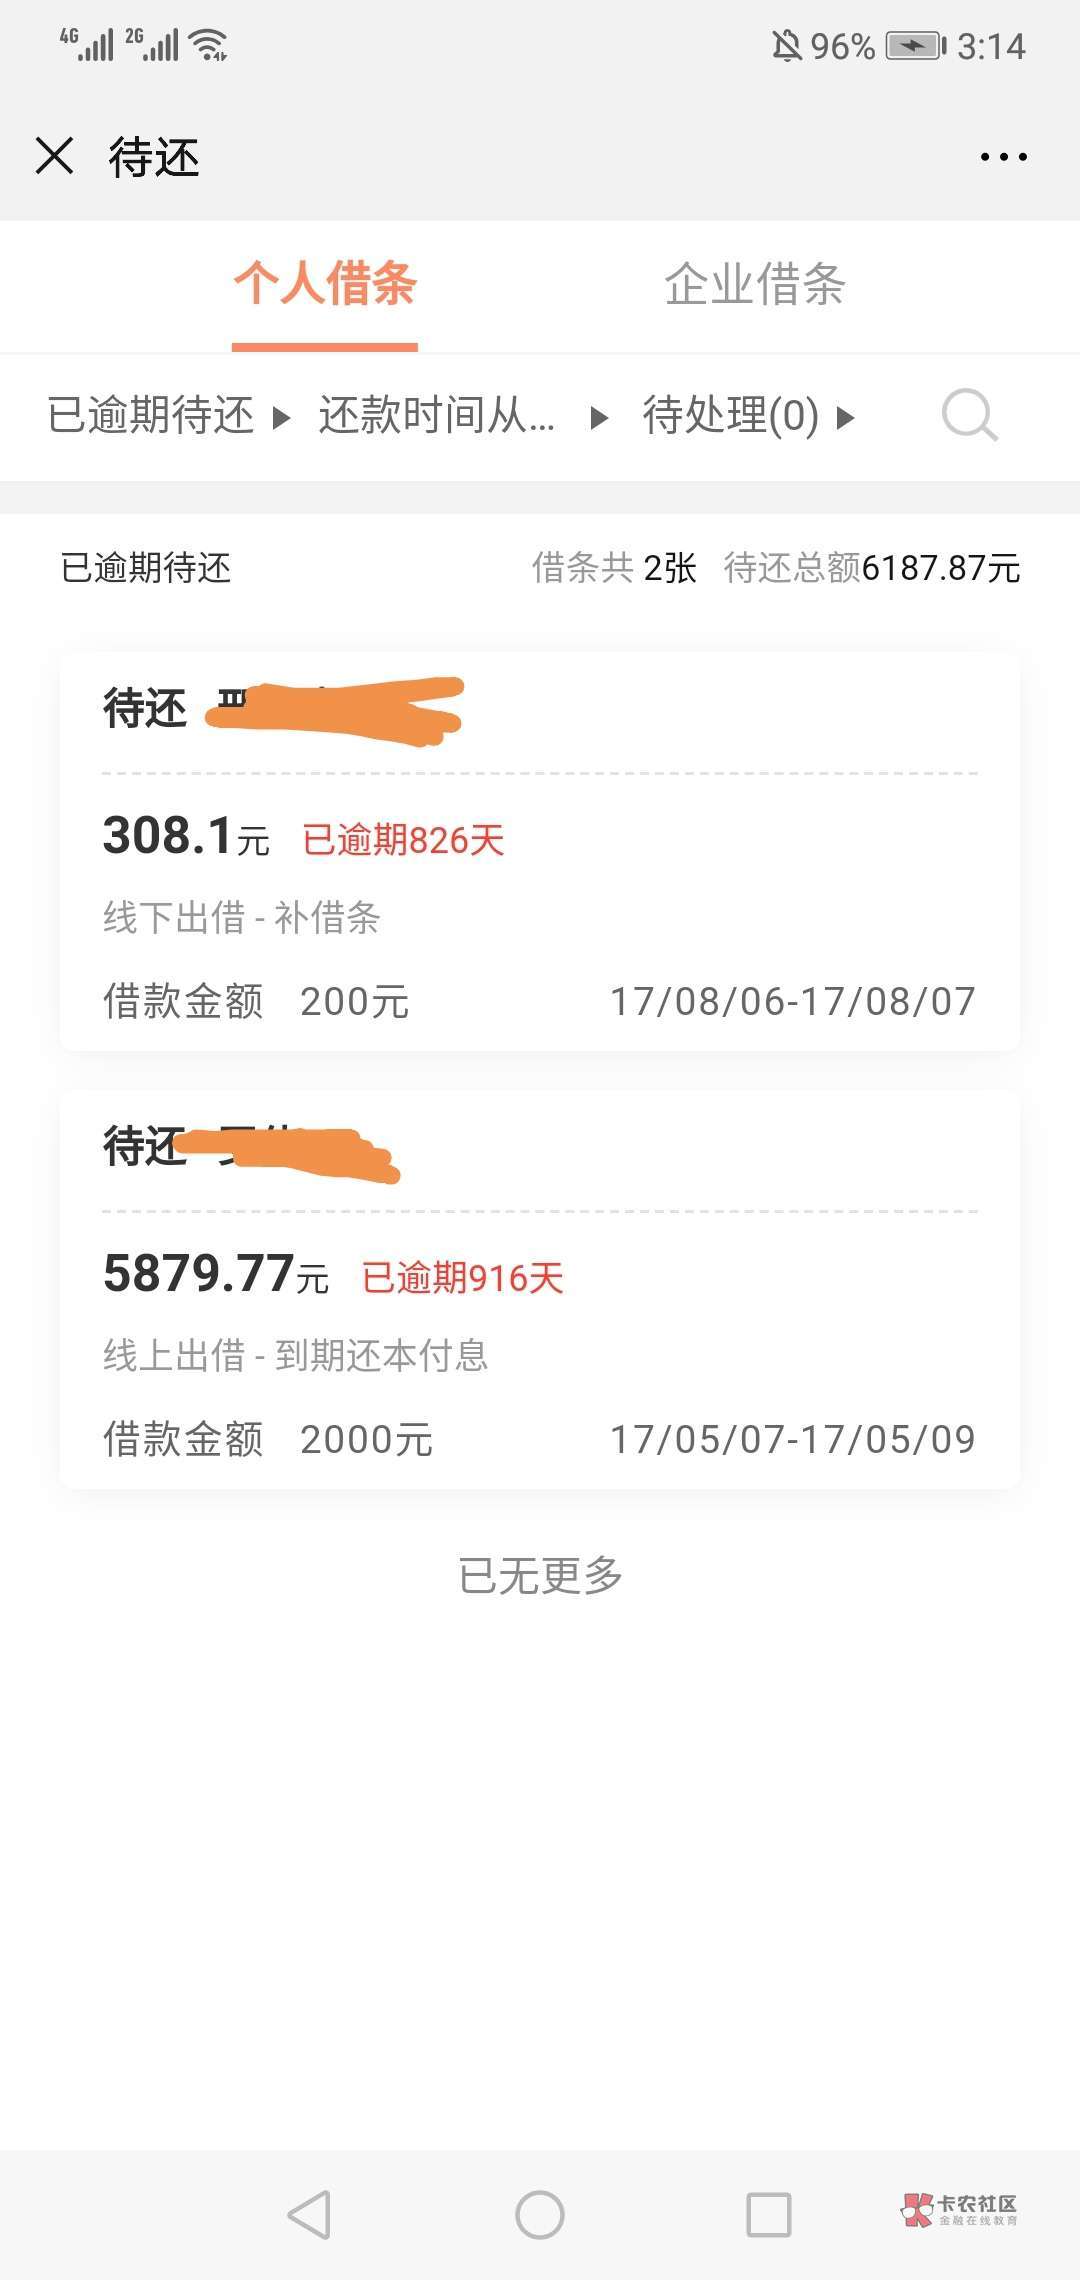 信用卡:中信银行340000本金,逾期4个月(已经开